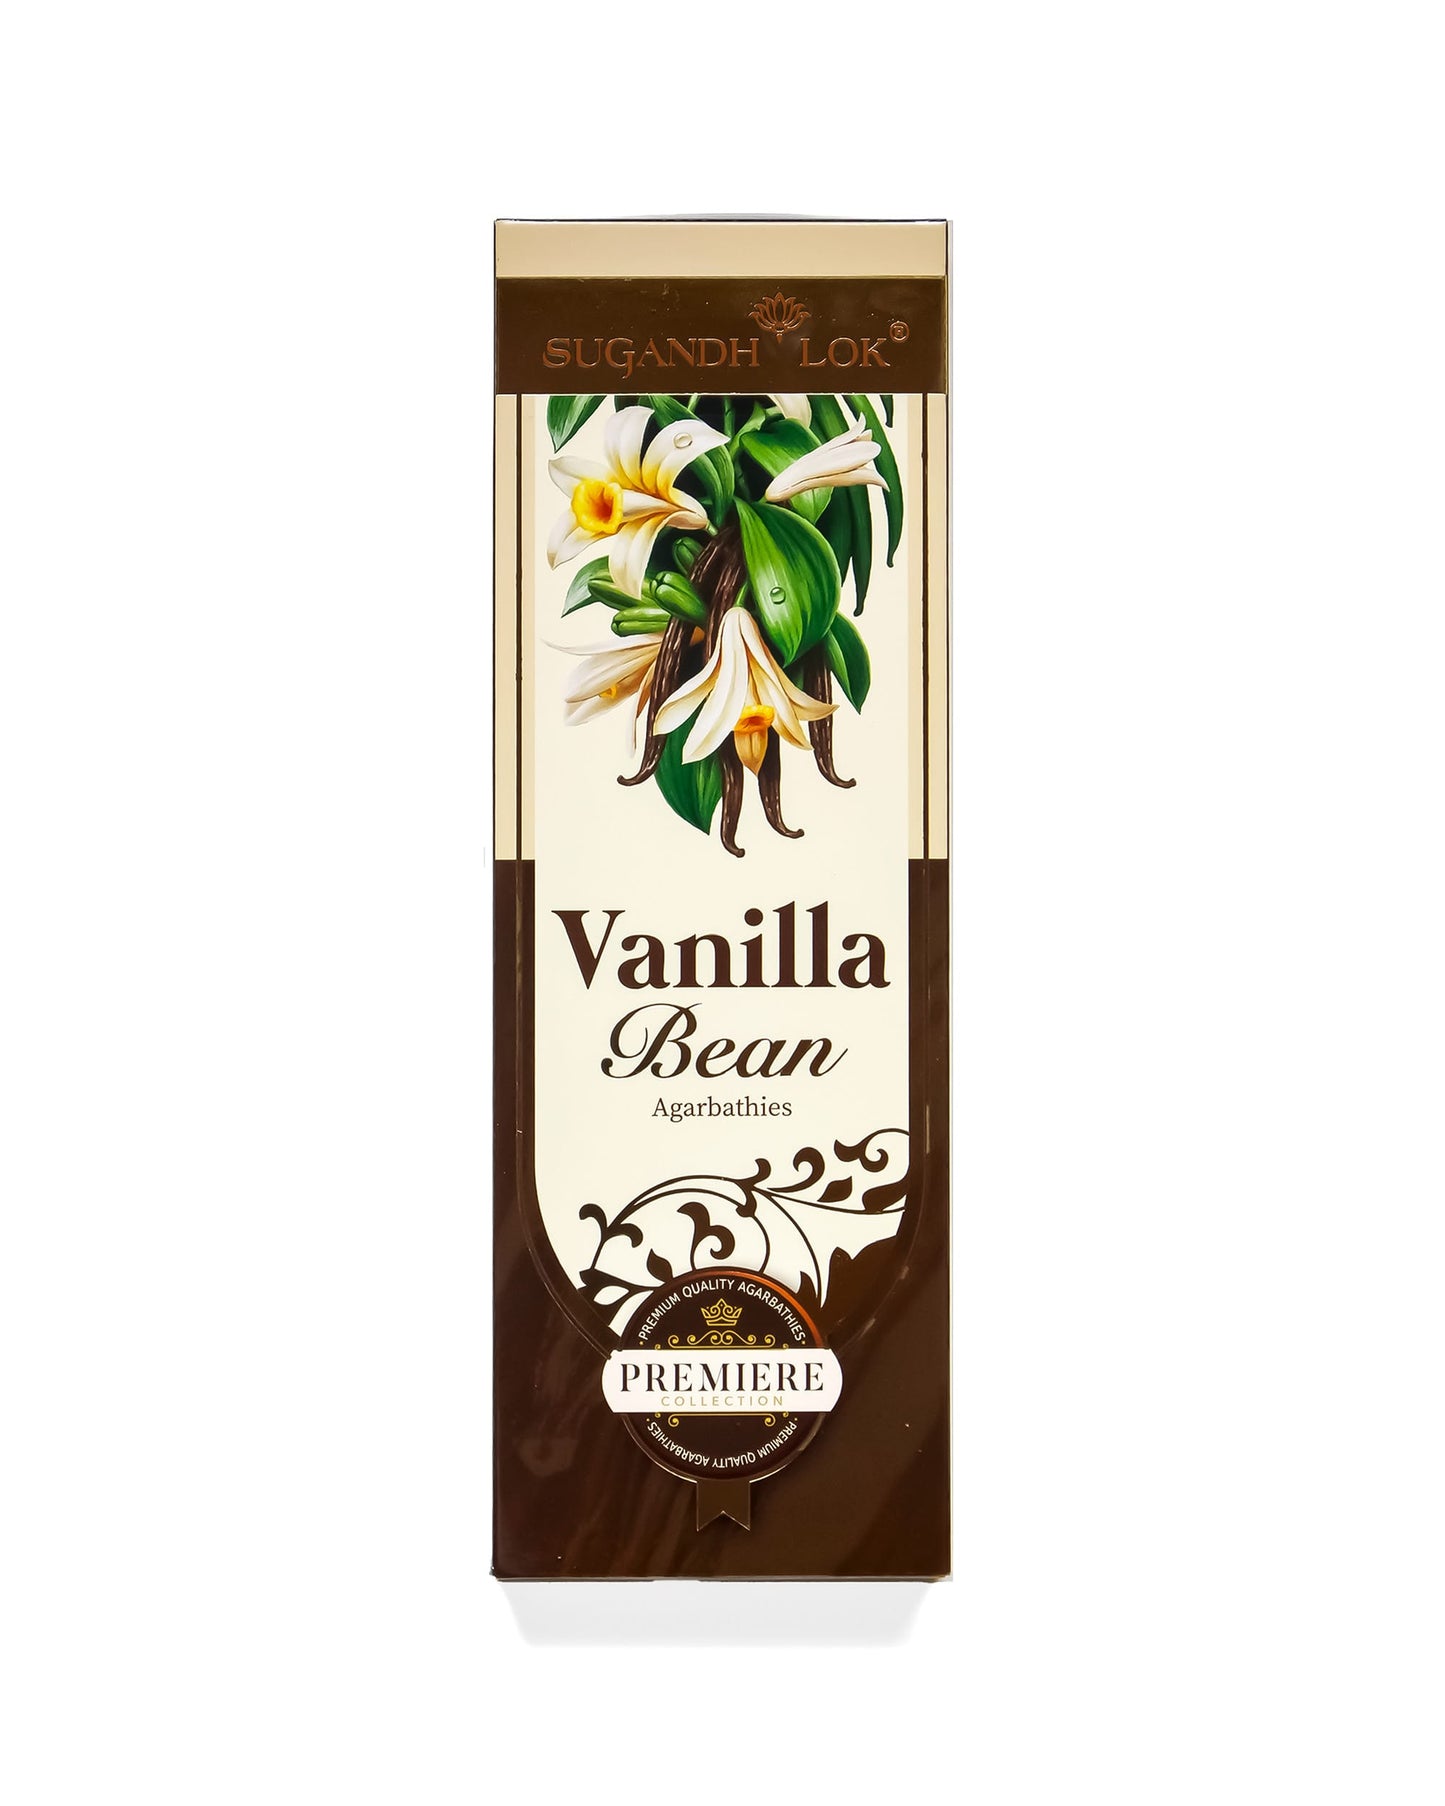 Vanilla Bean Agarbatti Pack - Premiere Collection by SugandhLok